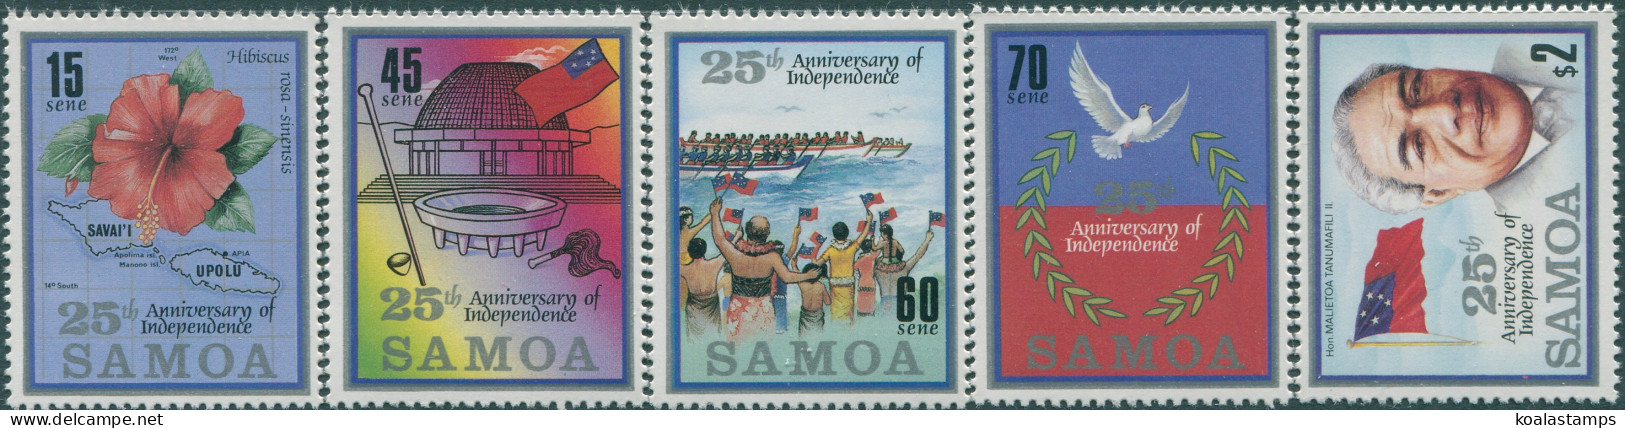 Samoa 1987 SG744-748 25th Anniversary Set MNH - Samoa (Staat)